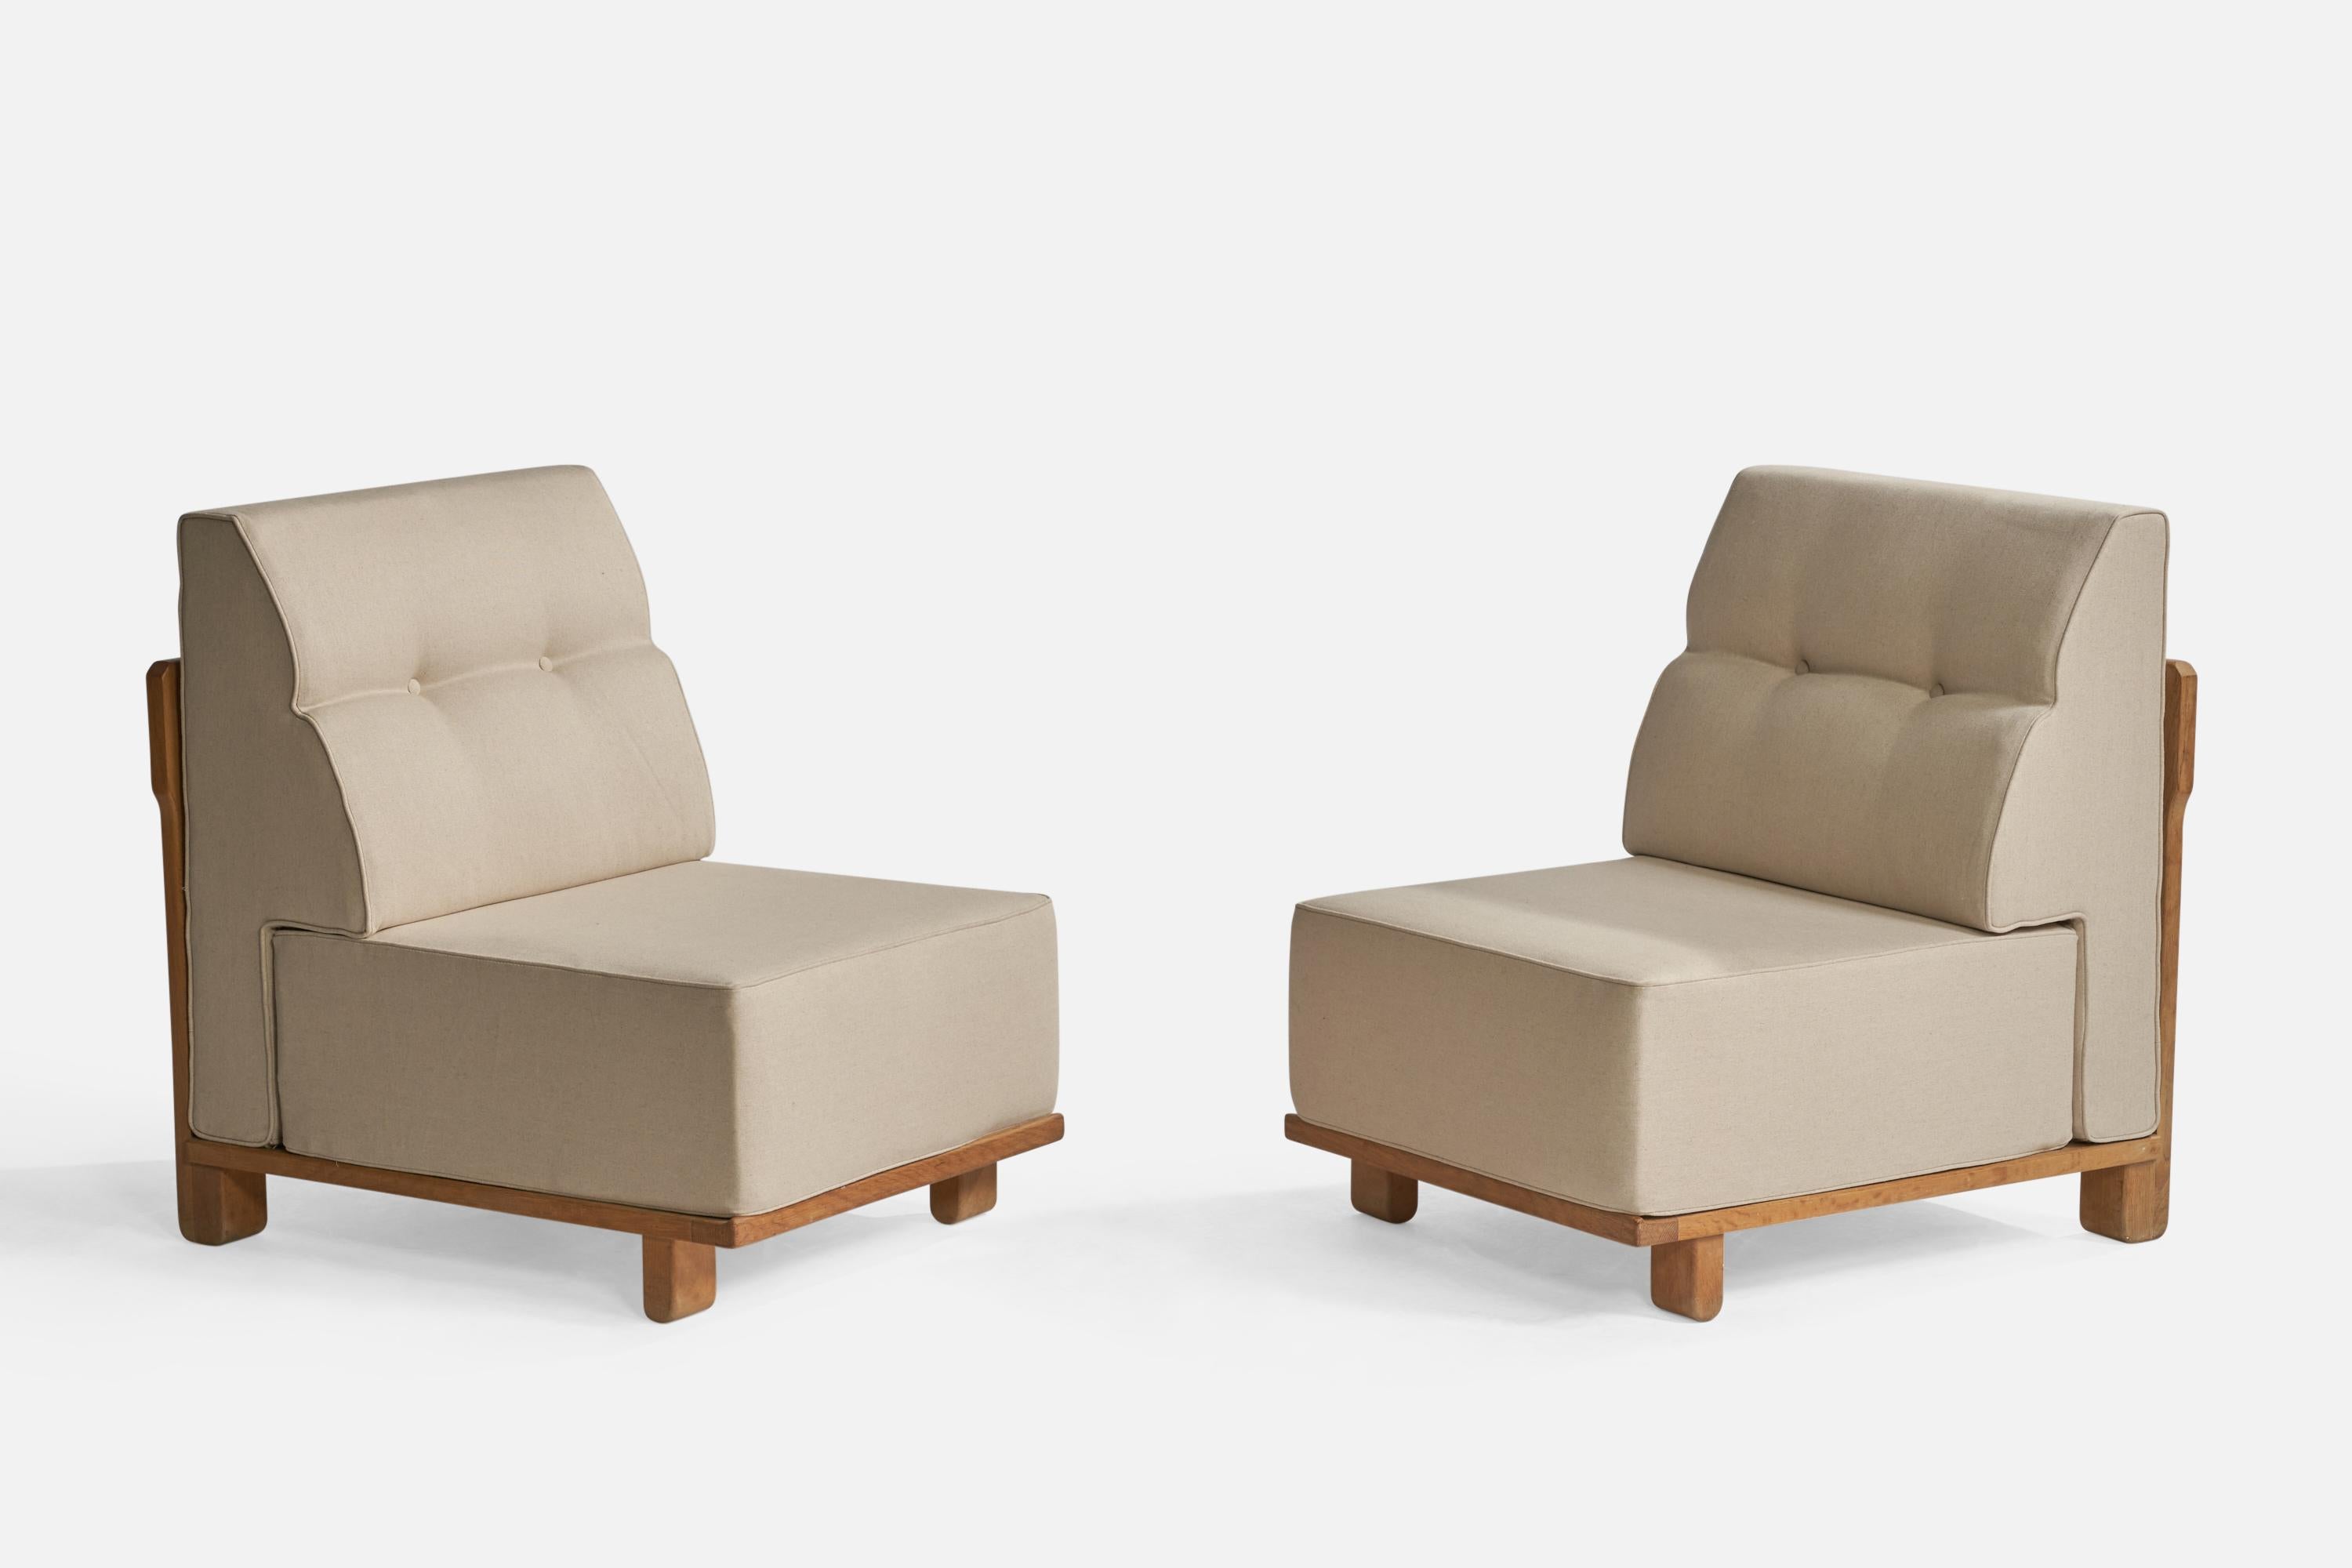 Ein Paar Lounge- oder Pantoffelstühle aus beigem Stoff und Eiche, entworfen von Robert Guillerme und Jacques Chambron, Frankreich, 1950er Jahre.

Sitzhöhe: 15.5